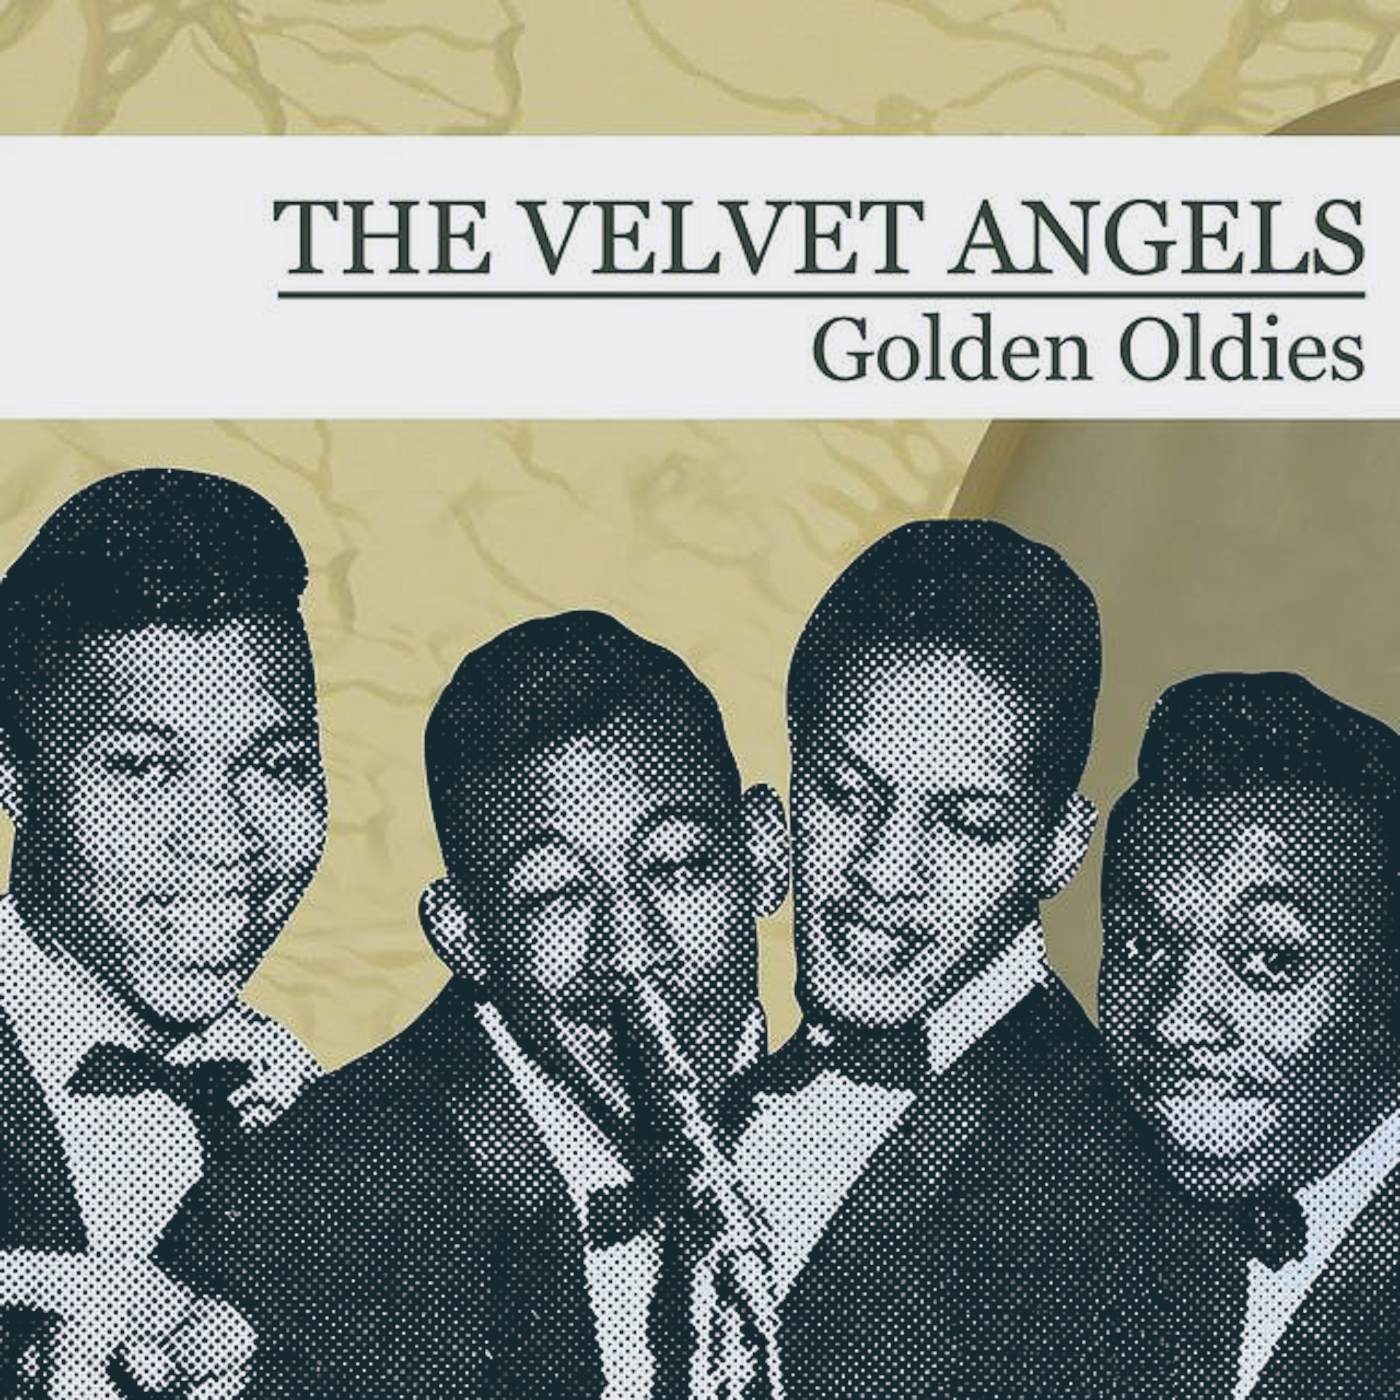 The Velvet Angels